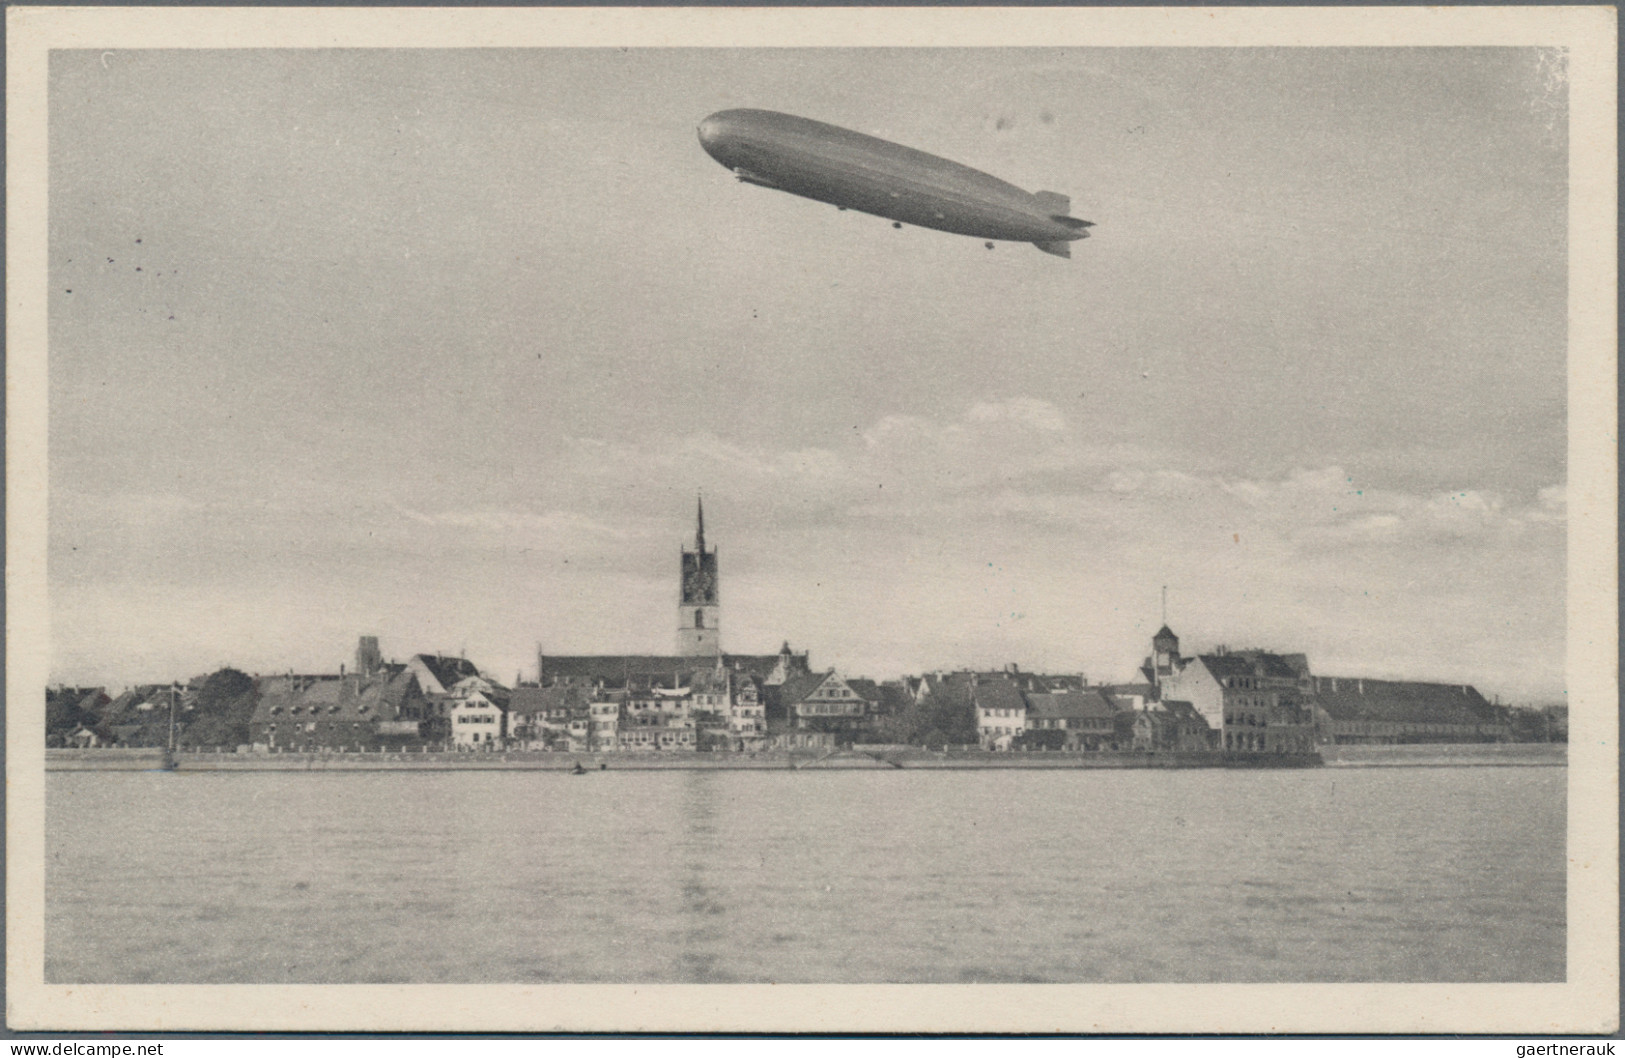 Zeppelin Mail - Germany: 1931, 1. Südamerikafahrt, Bordpost-Ansichtskarte Bis Pe - Airmail & Zeppelin